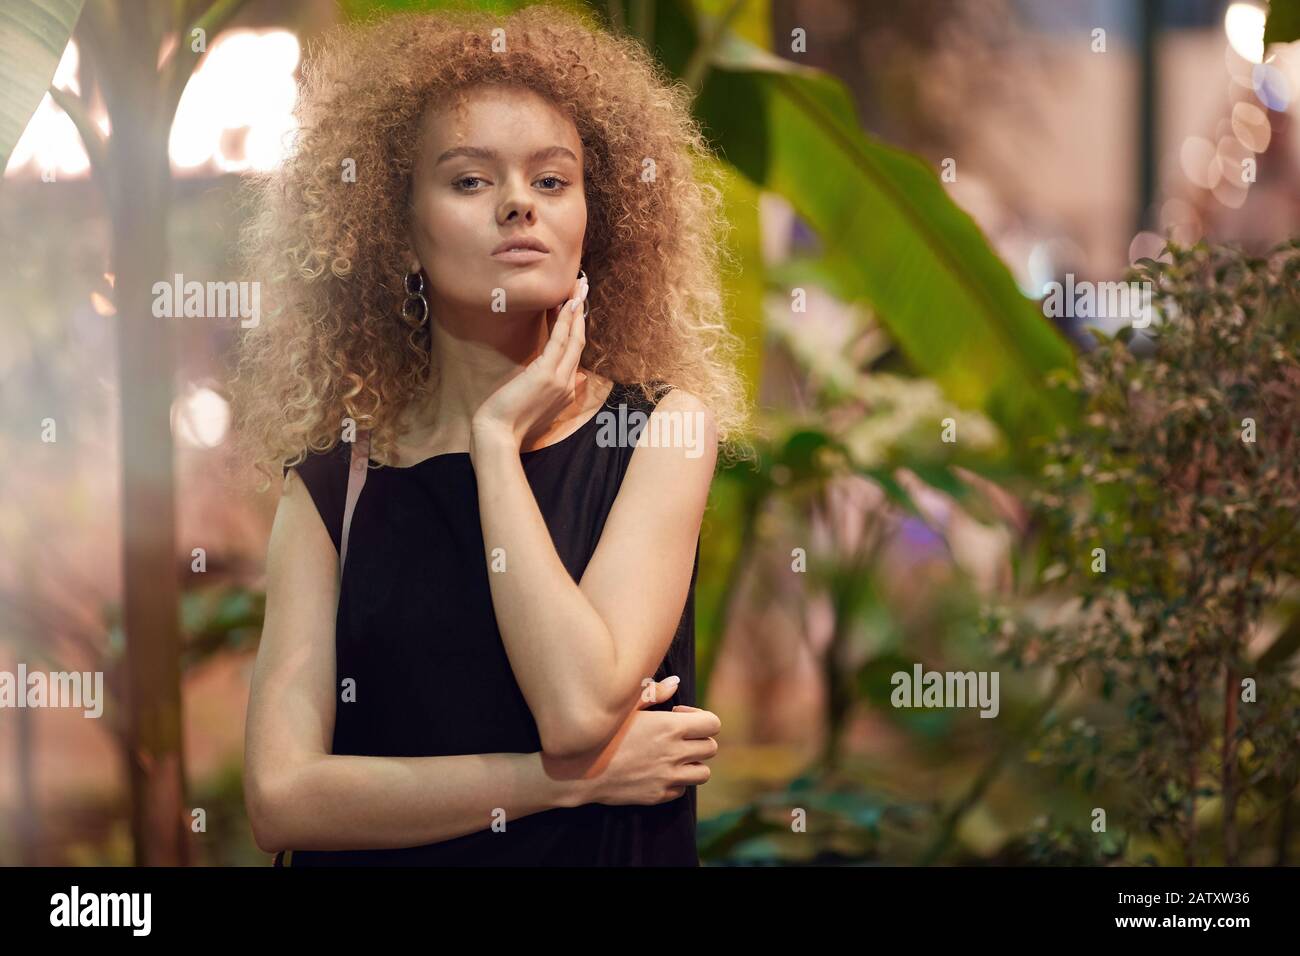 Ritratto di bella giovane donna con capelli ricci biondi in abito nero posa alla macchina fotografica Foto Stock